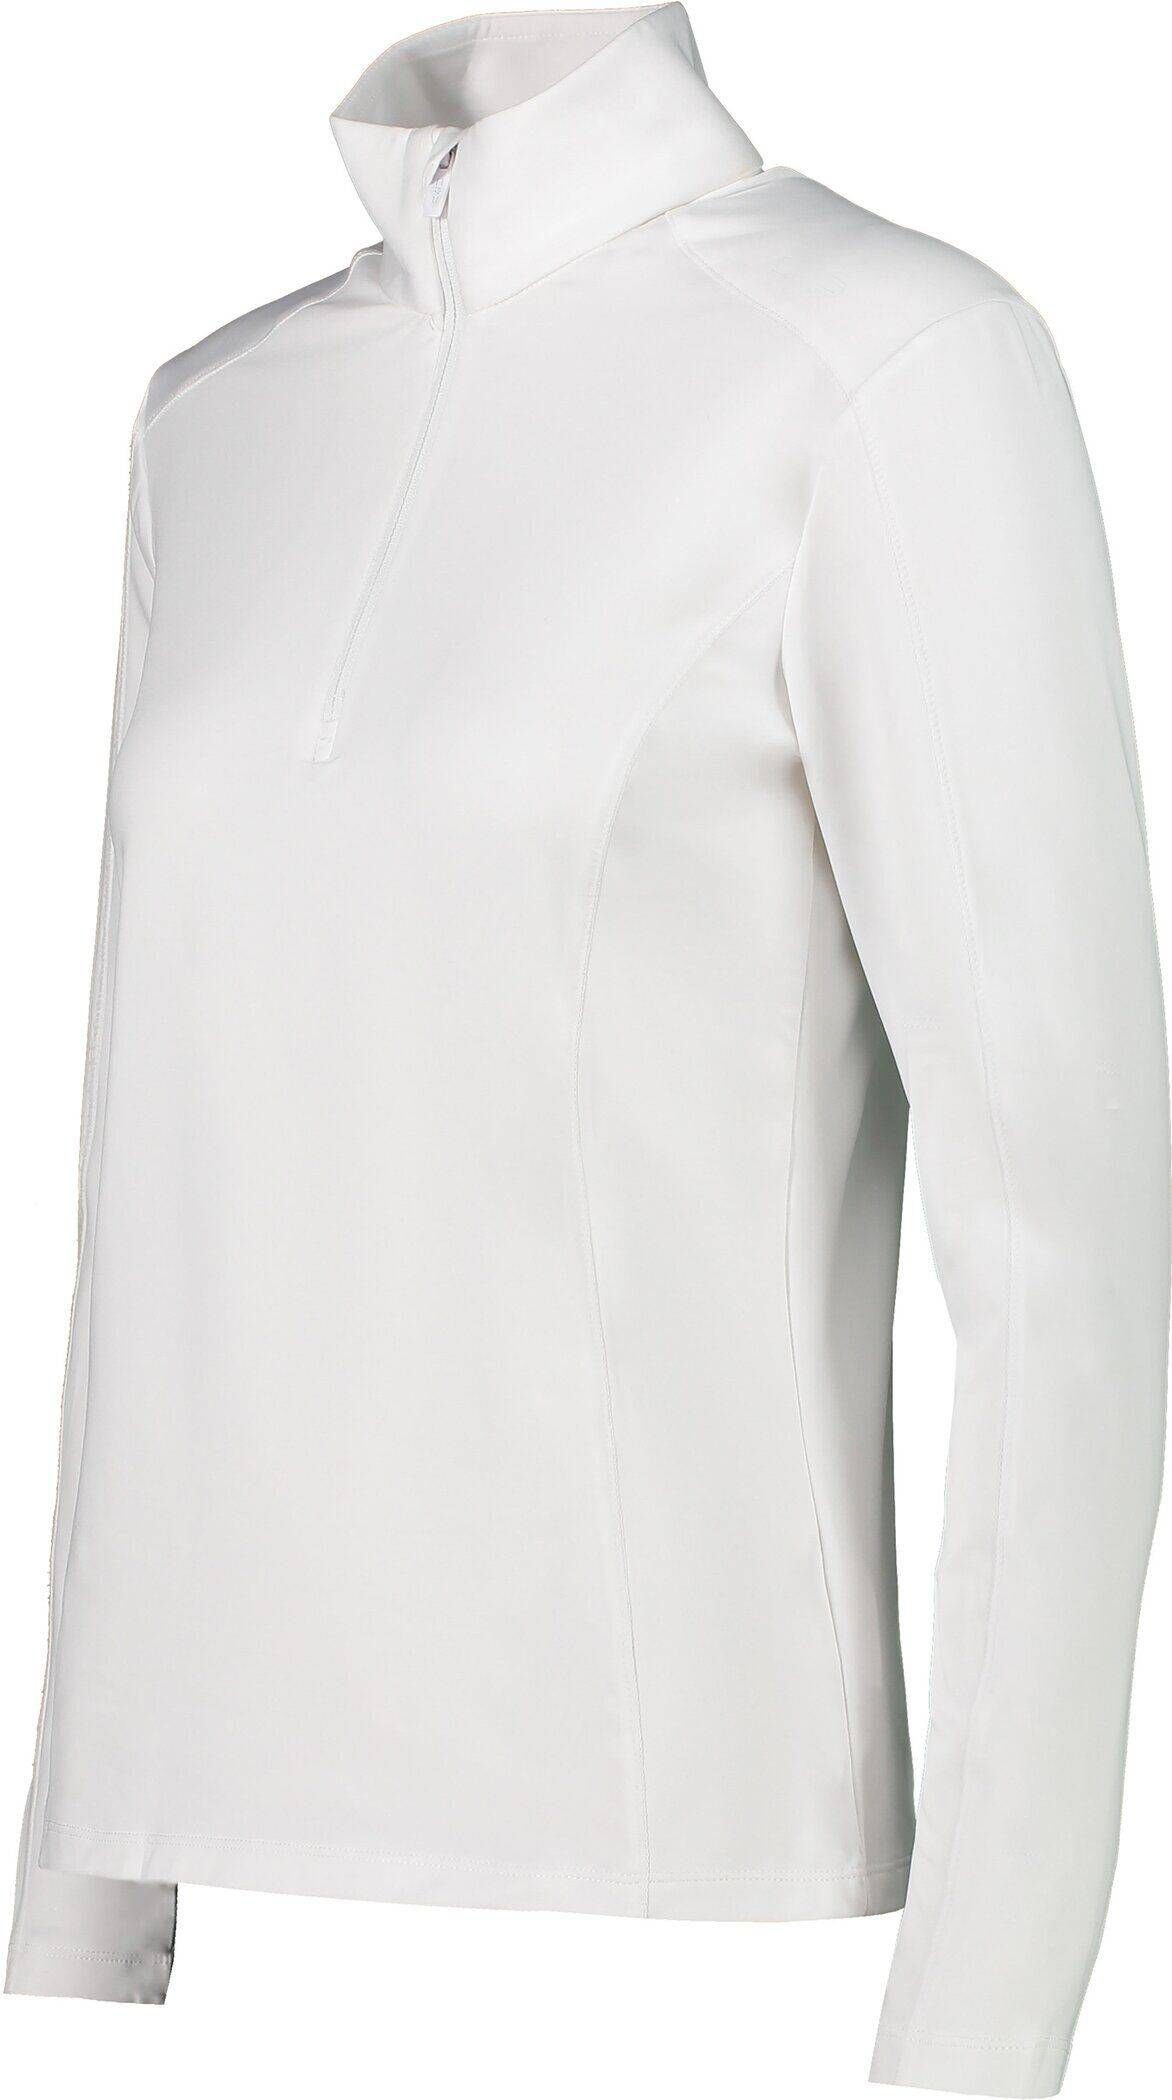 (100) CMP Sweatshirt Trainingsjacke weiß Damen